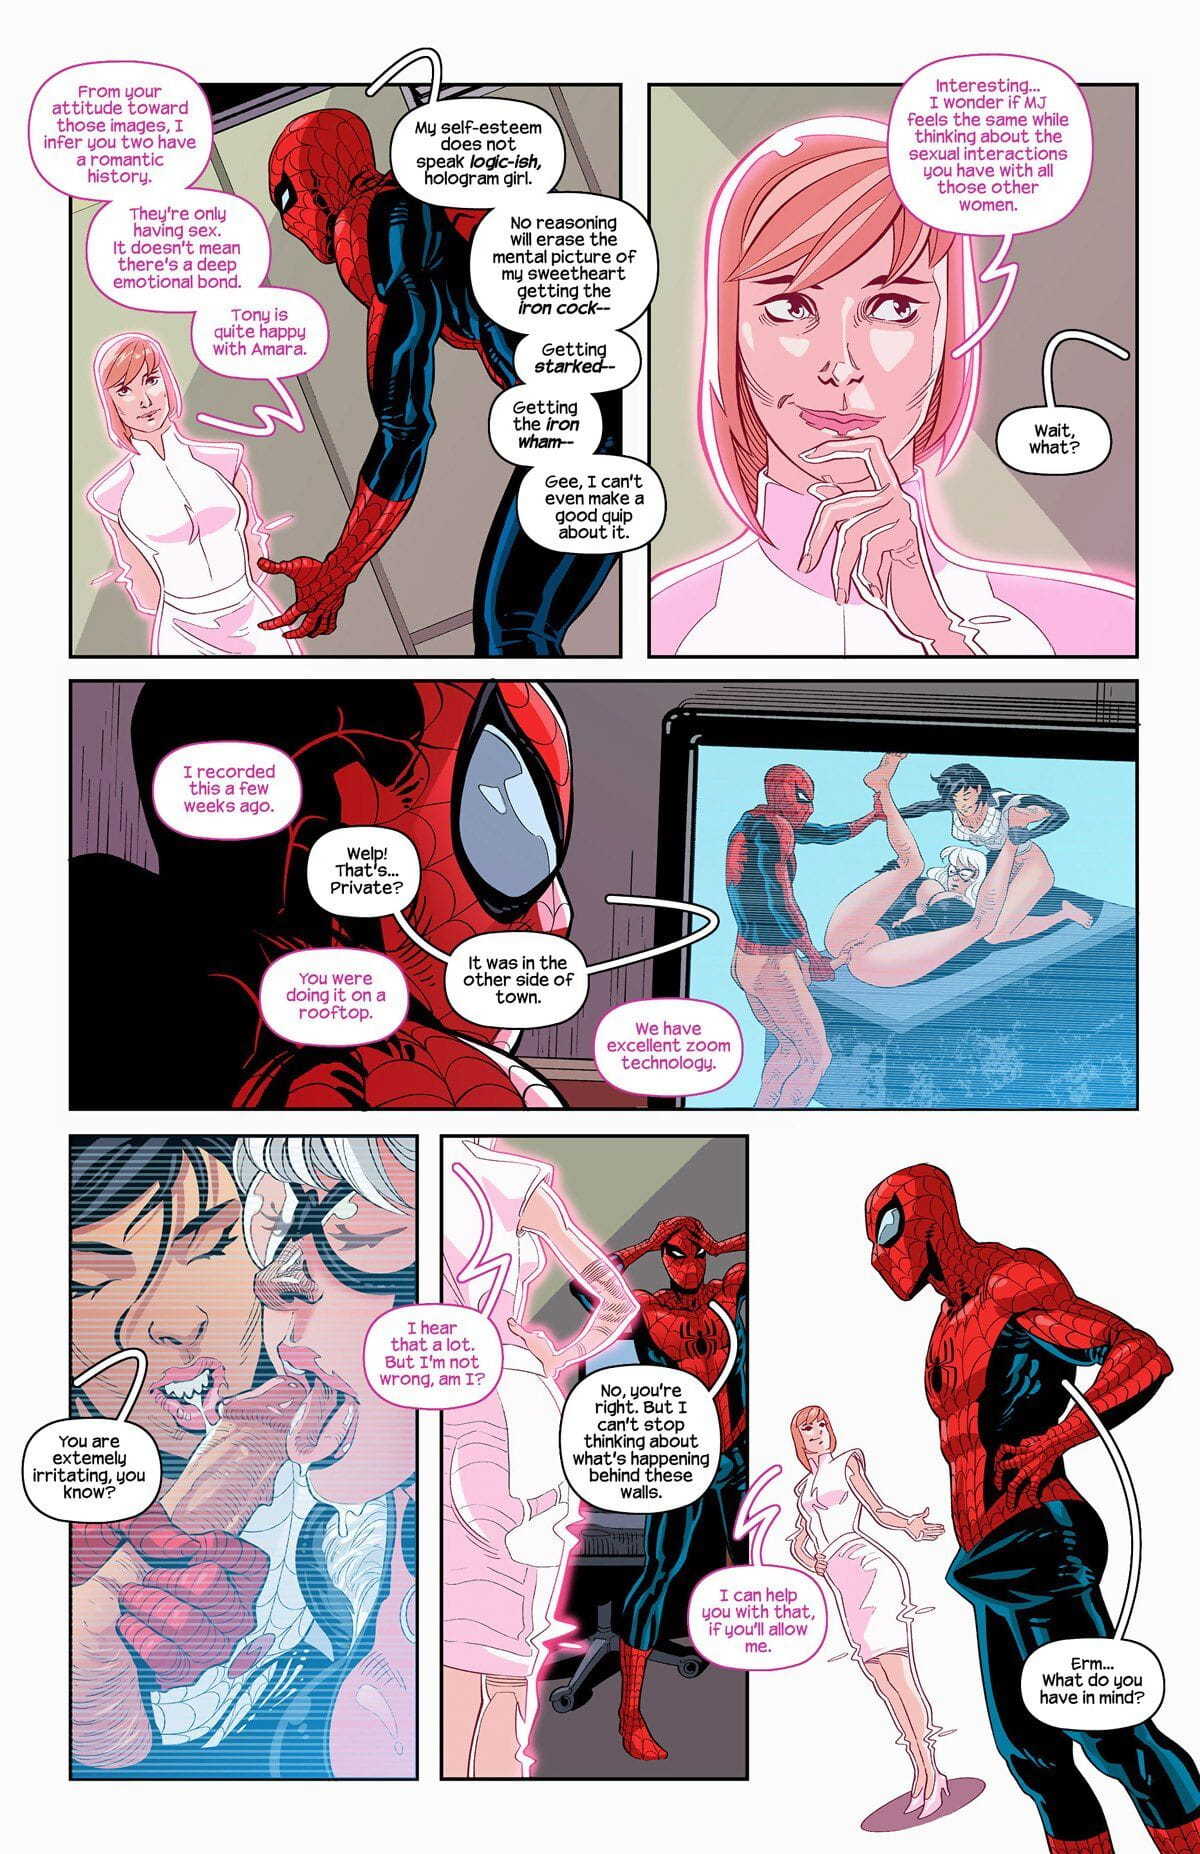 Tracy scops invencible Hierro araña – page 1